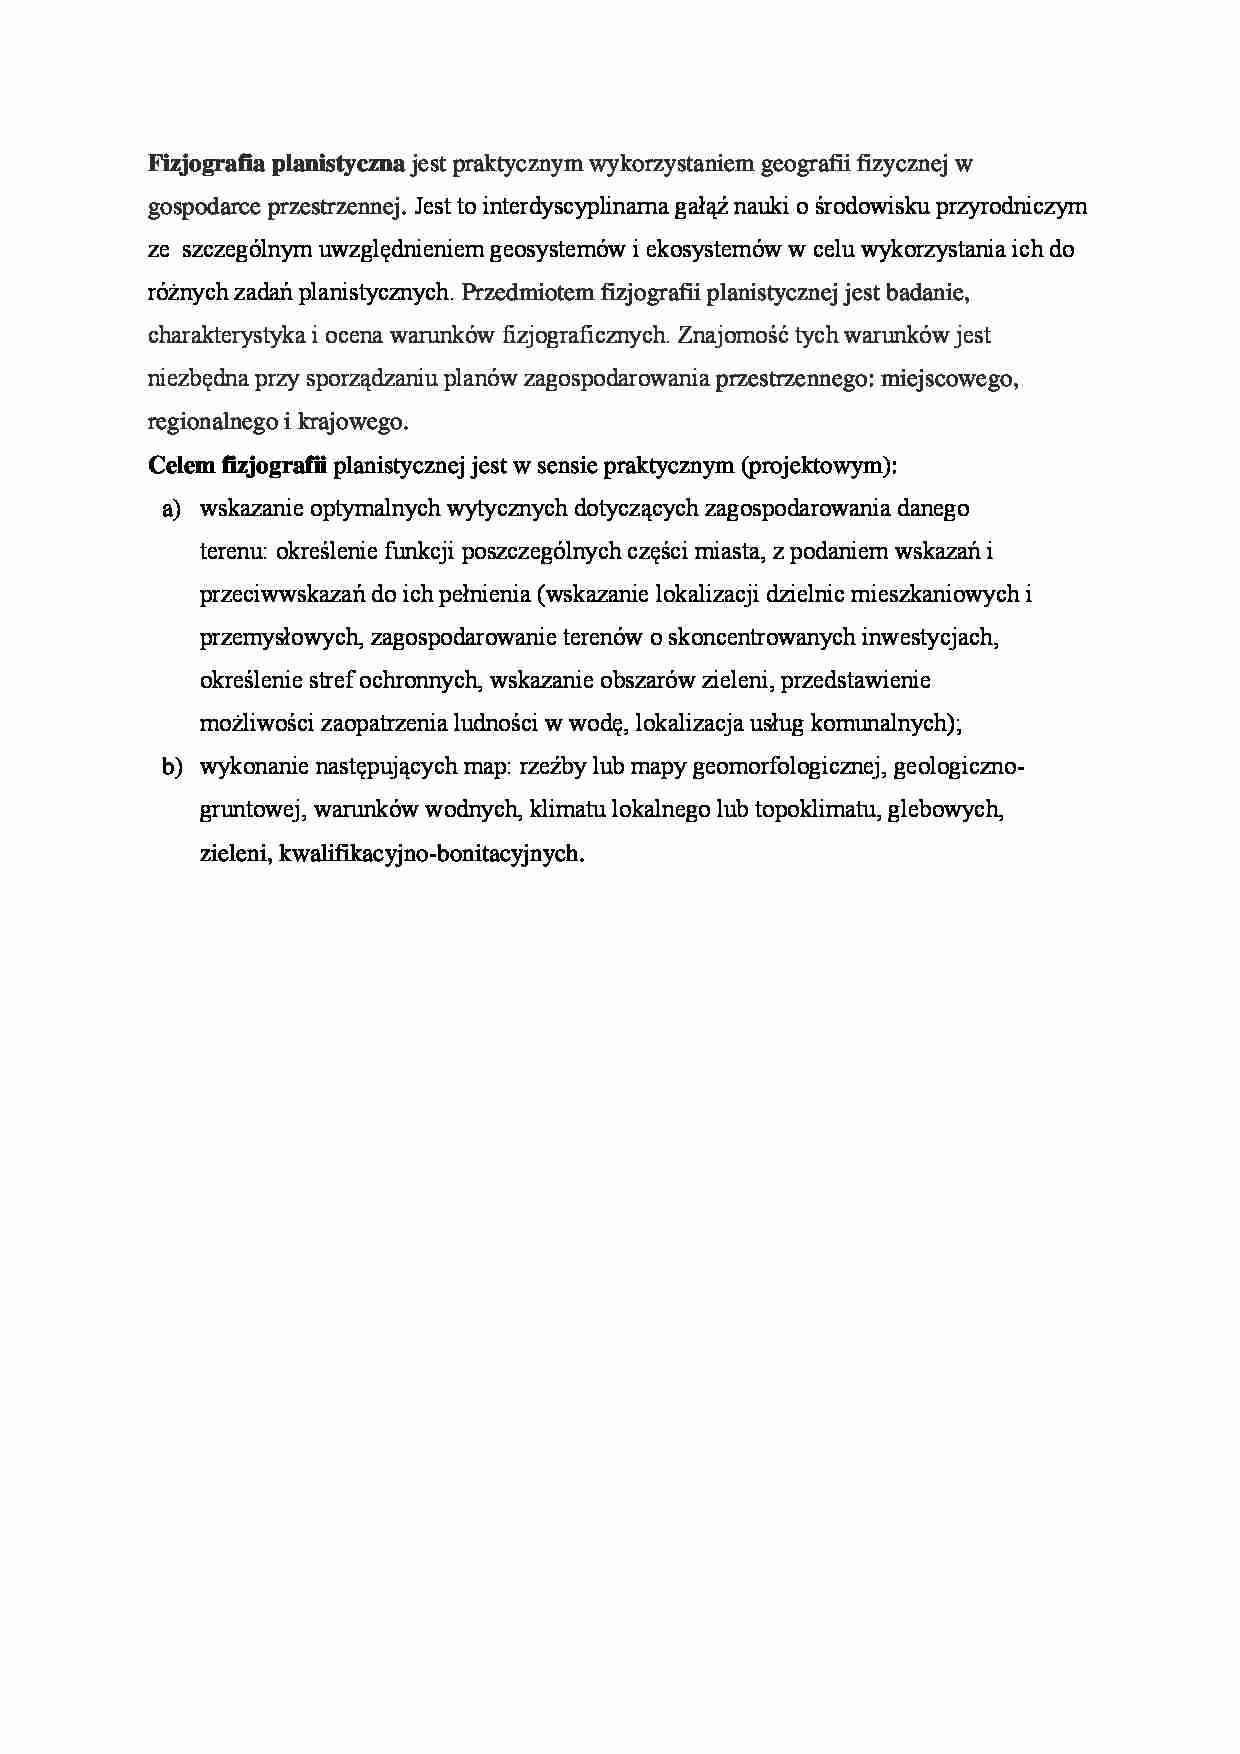 Fizjografia planistyczna i jej cele. - strona 1